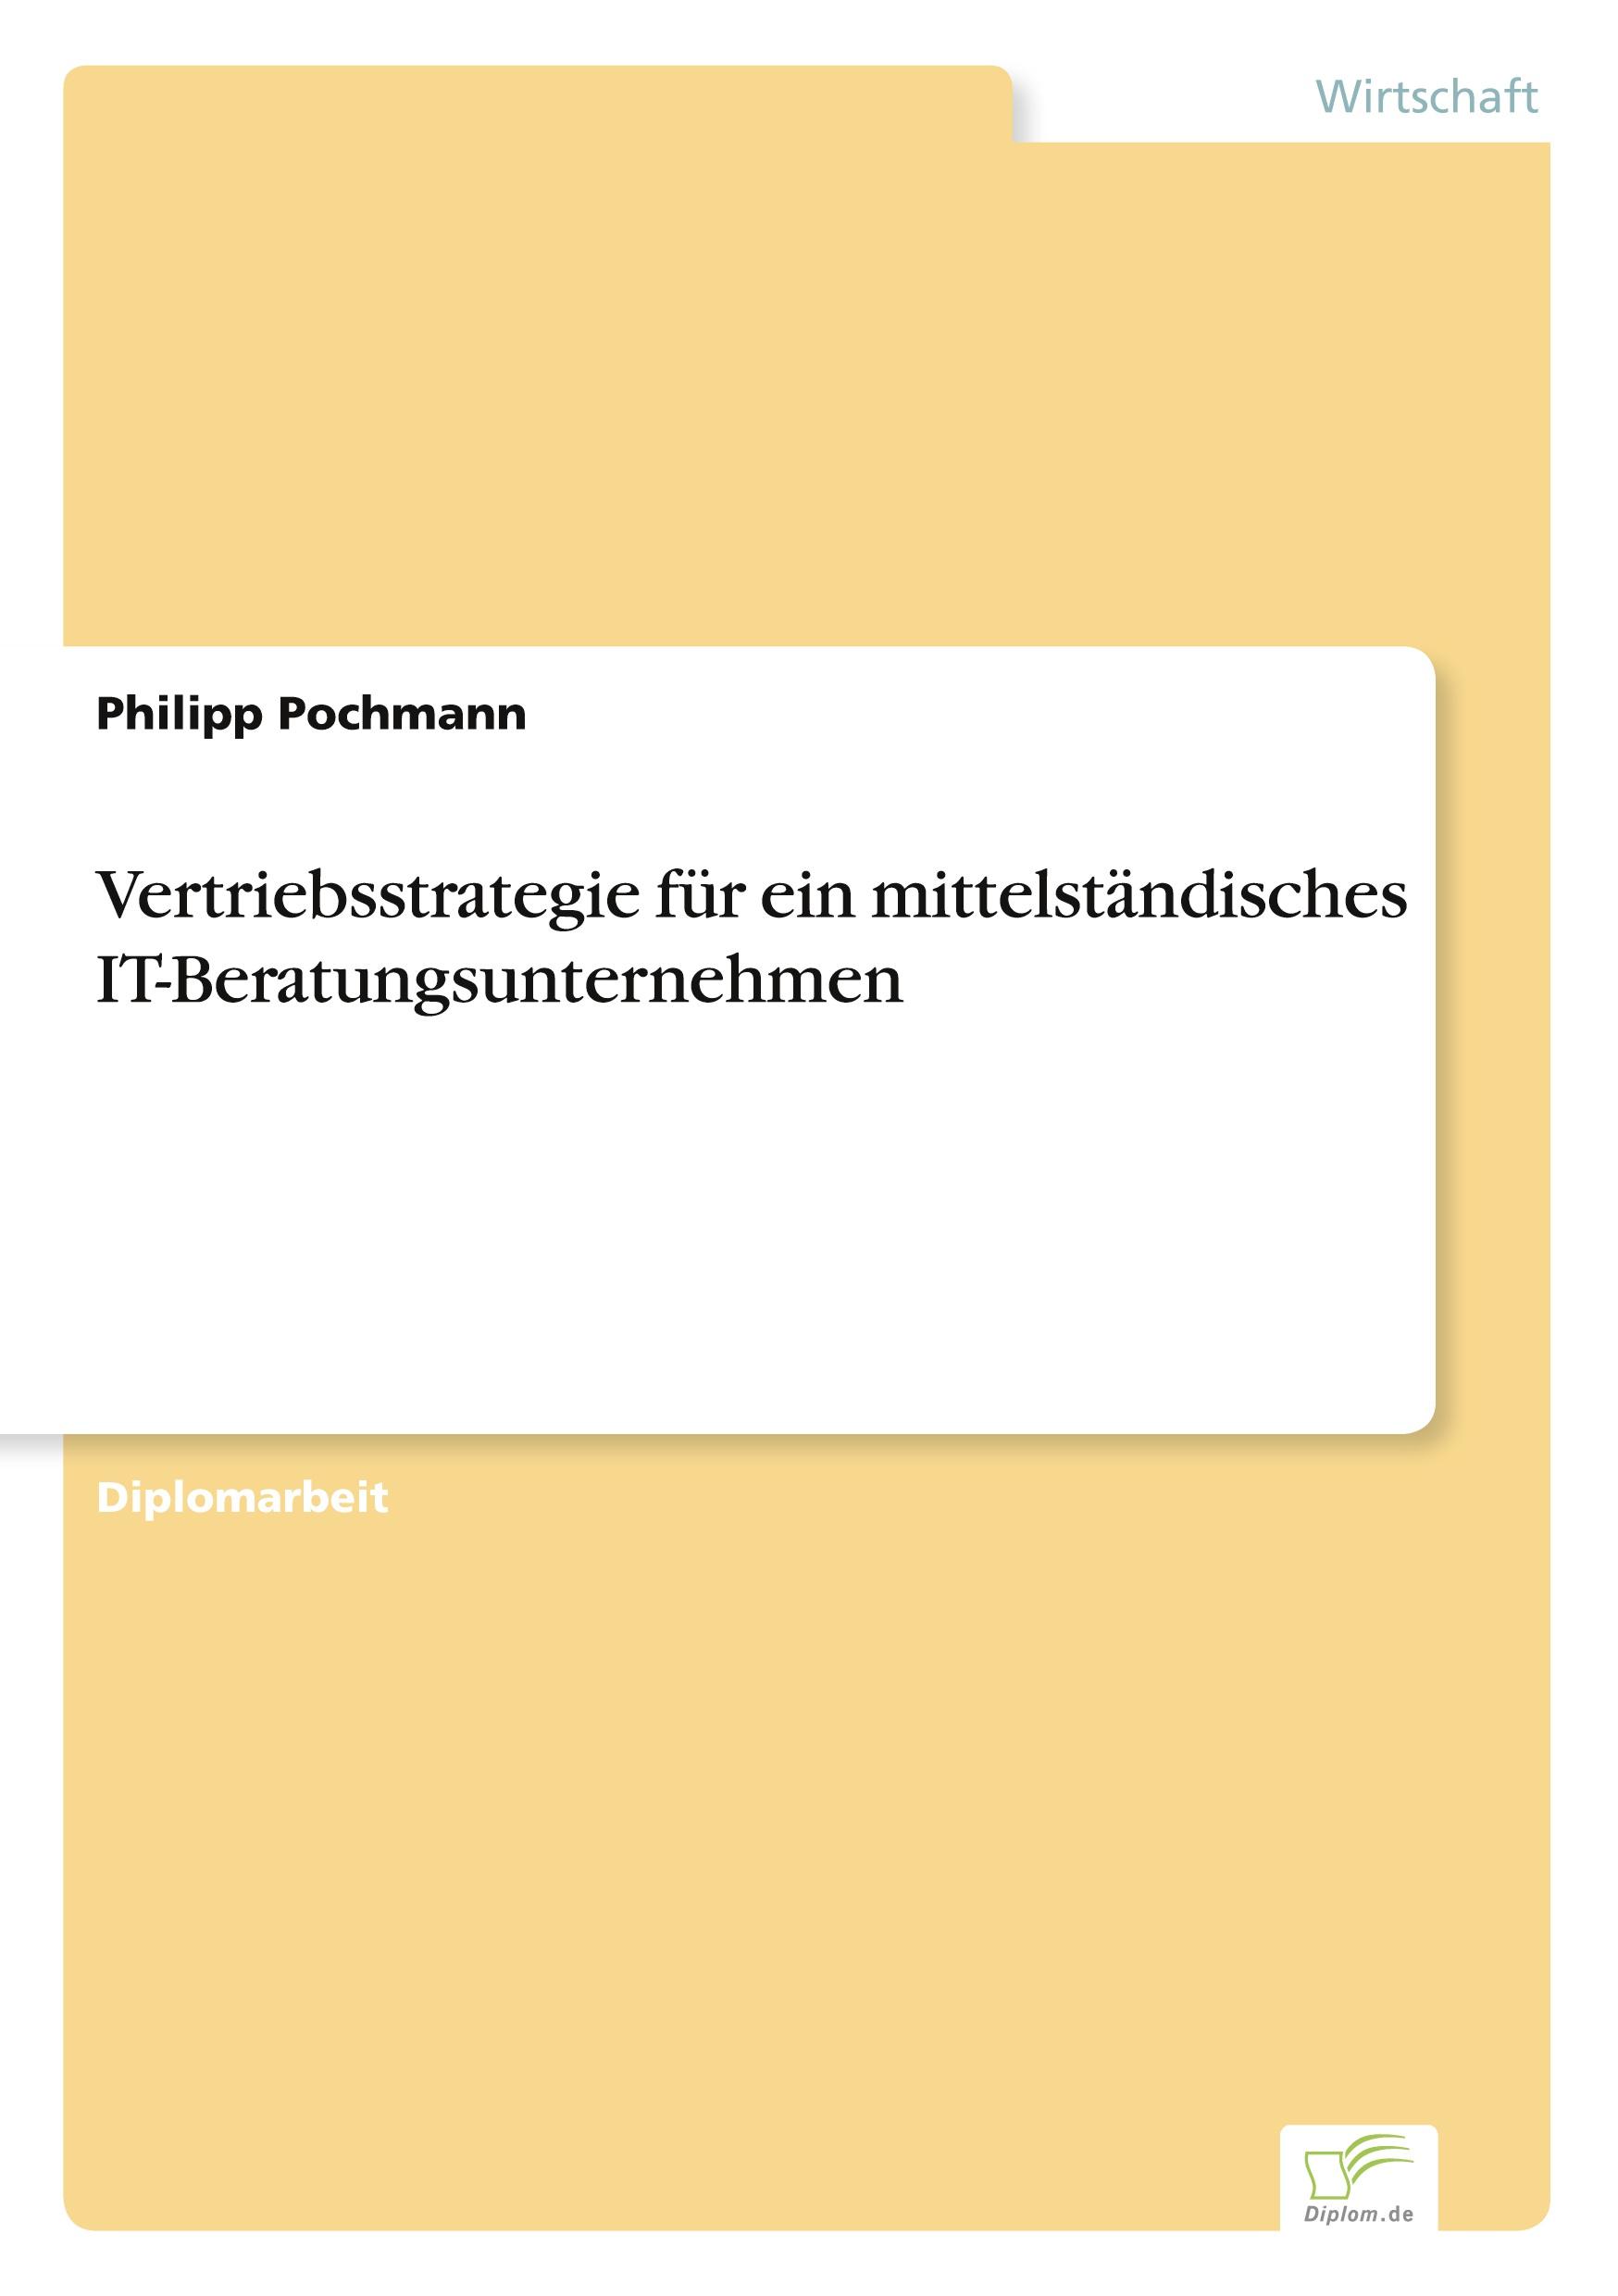 Vertriebsstrategie fuer ein mittelstaendisches IT-Beratungsunternehmen - Pochmann, Philipp